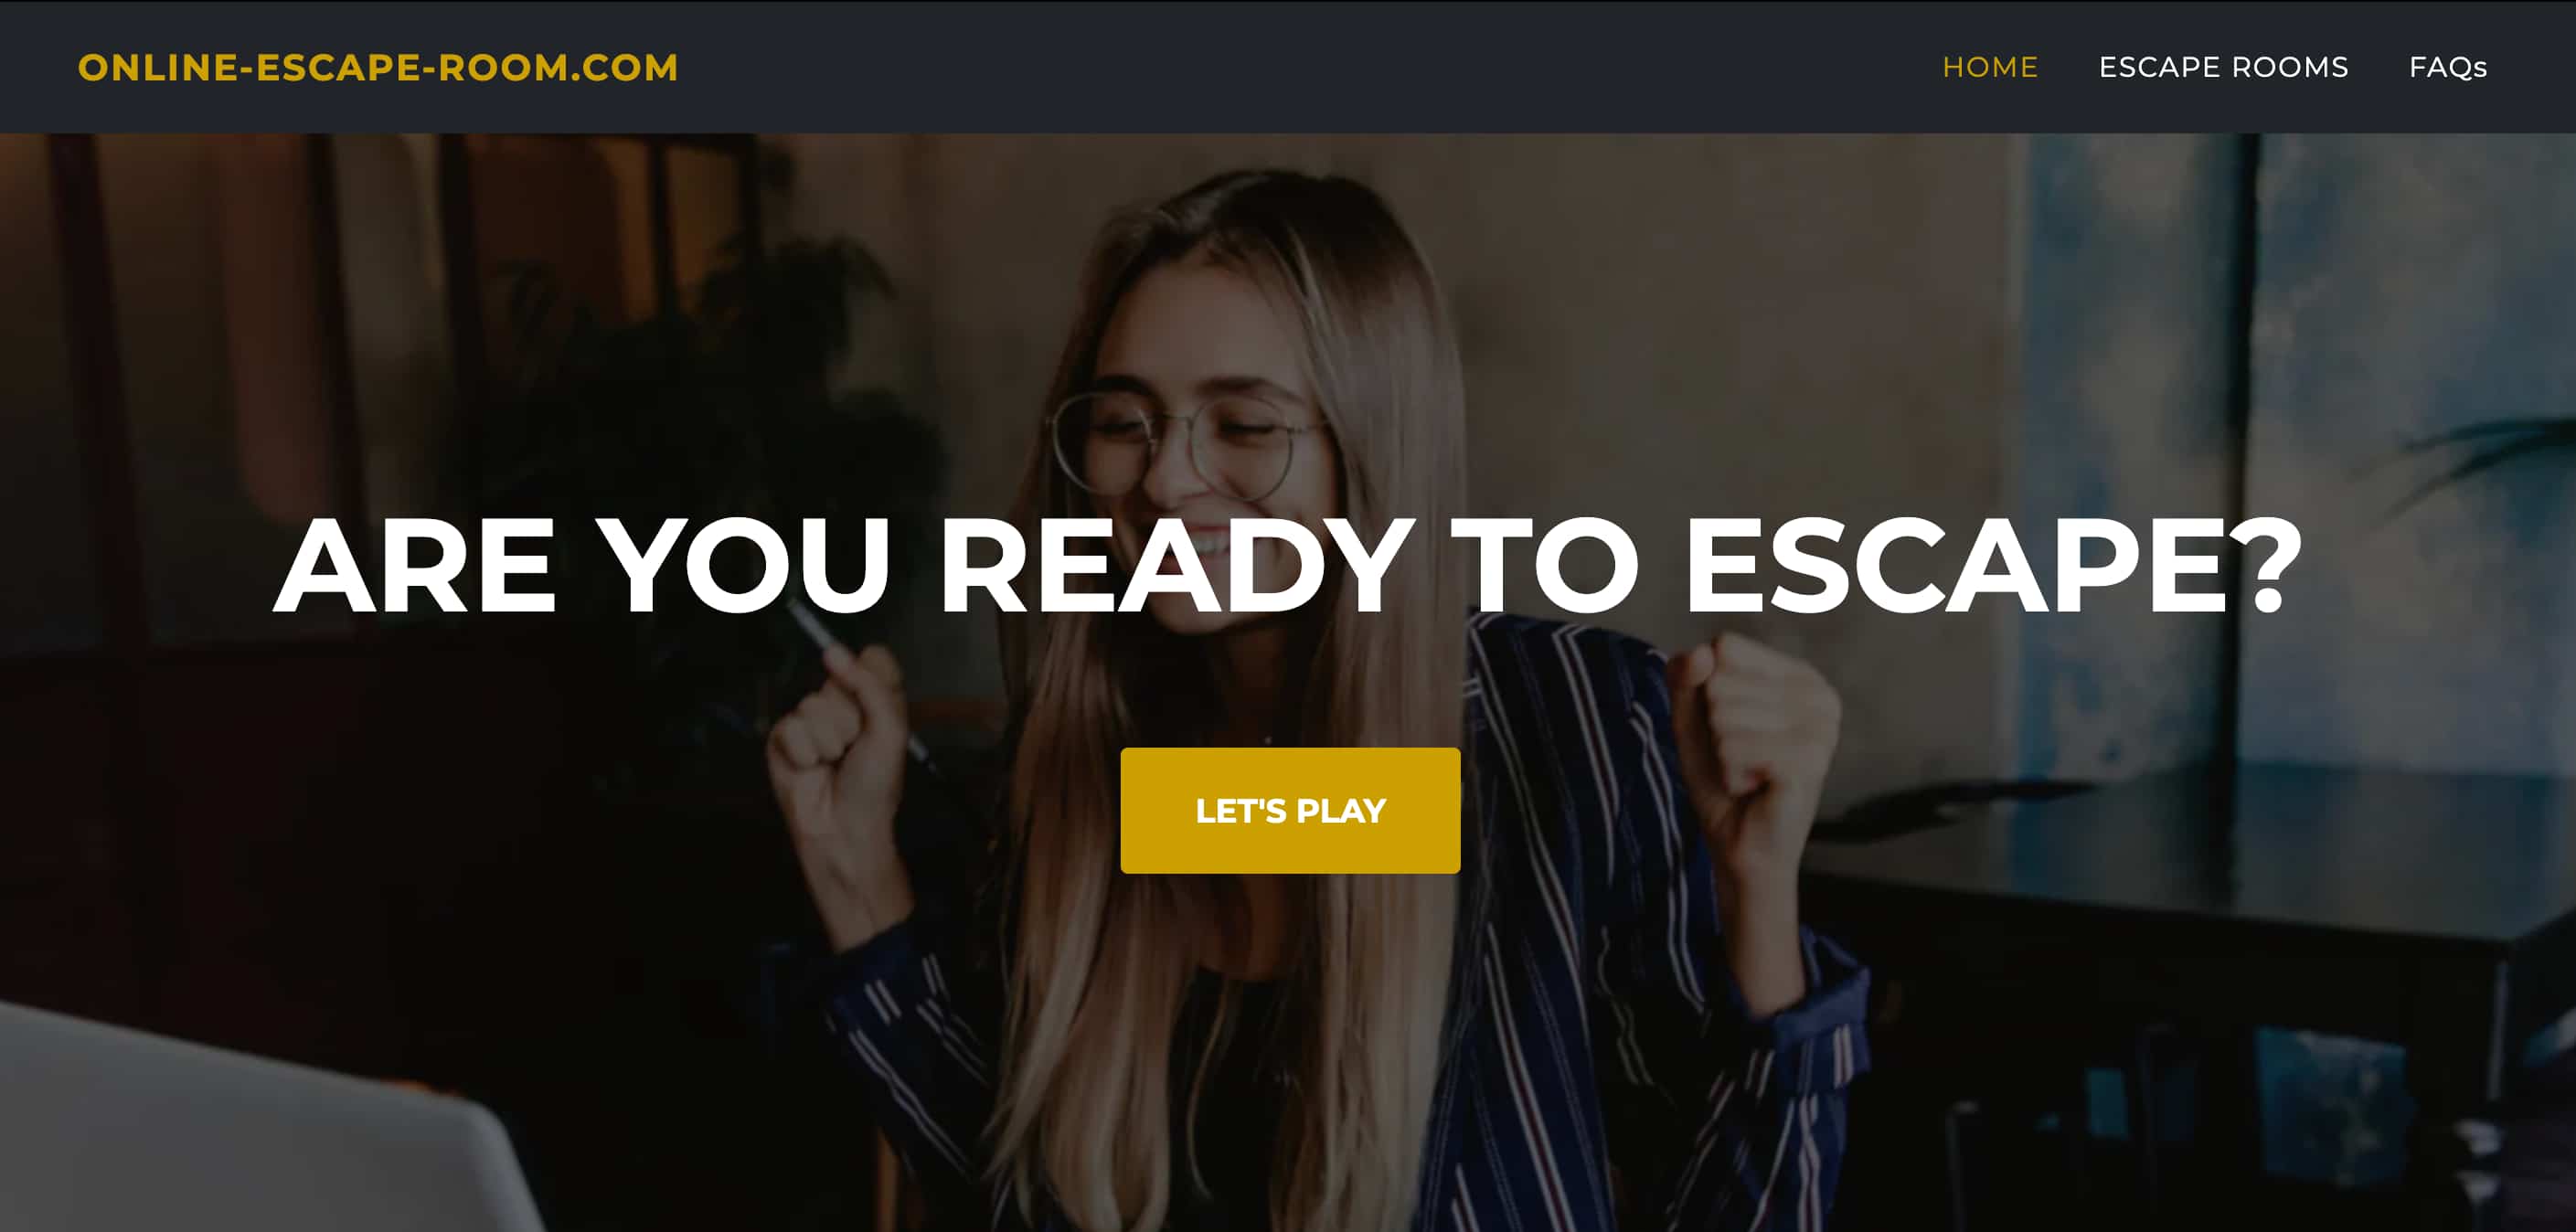 Online-Escape-Room.com